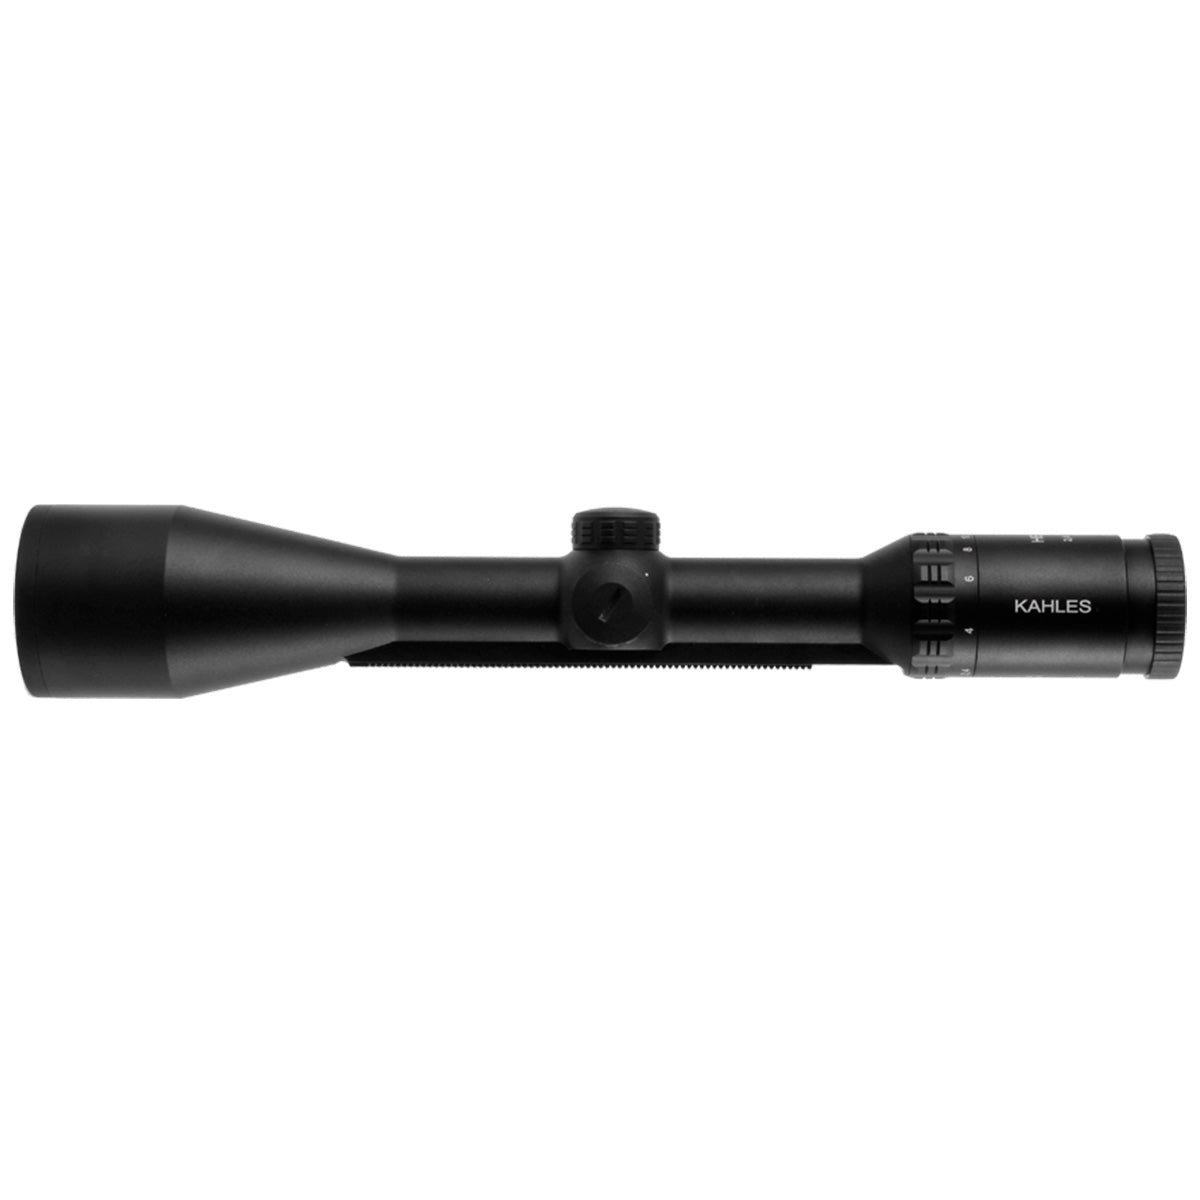 Kahles Helia 2,4-12x56i Abs. 4-dot Illuminated Scope rifle scope